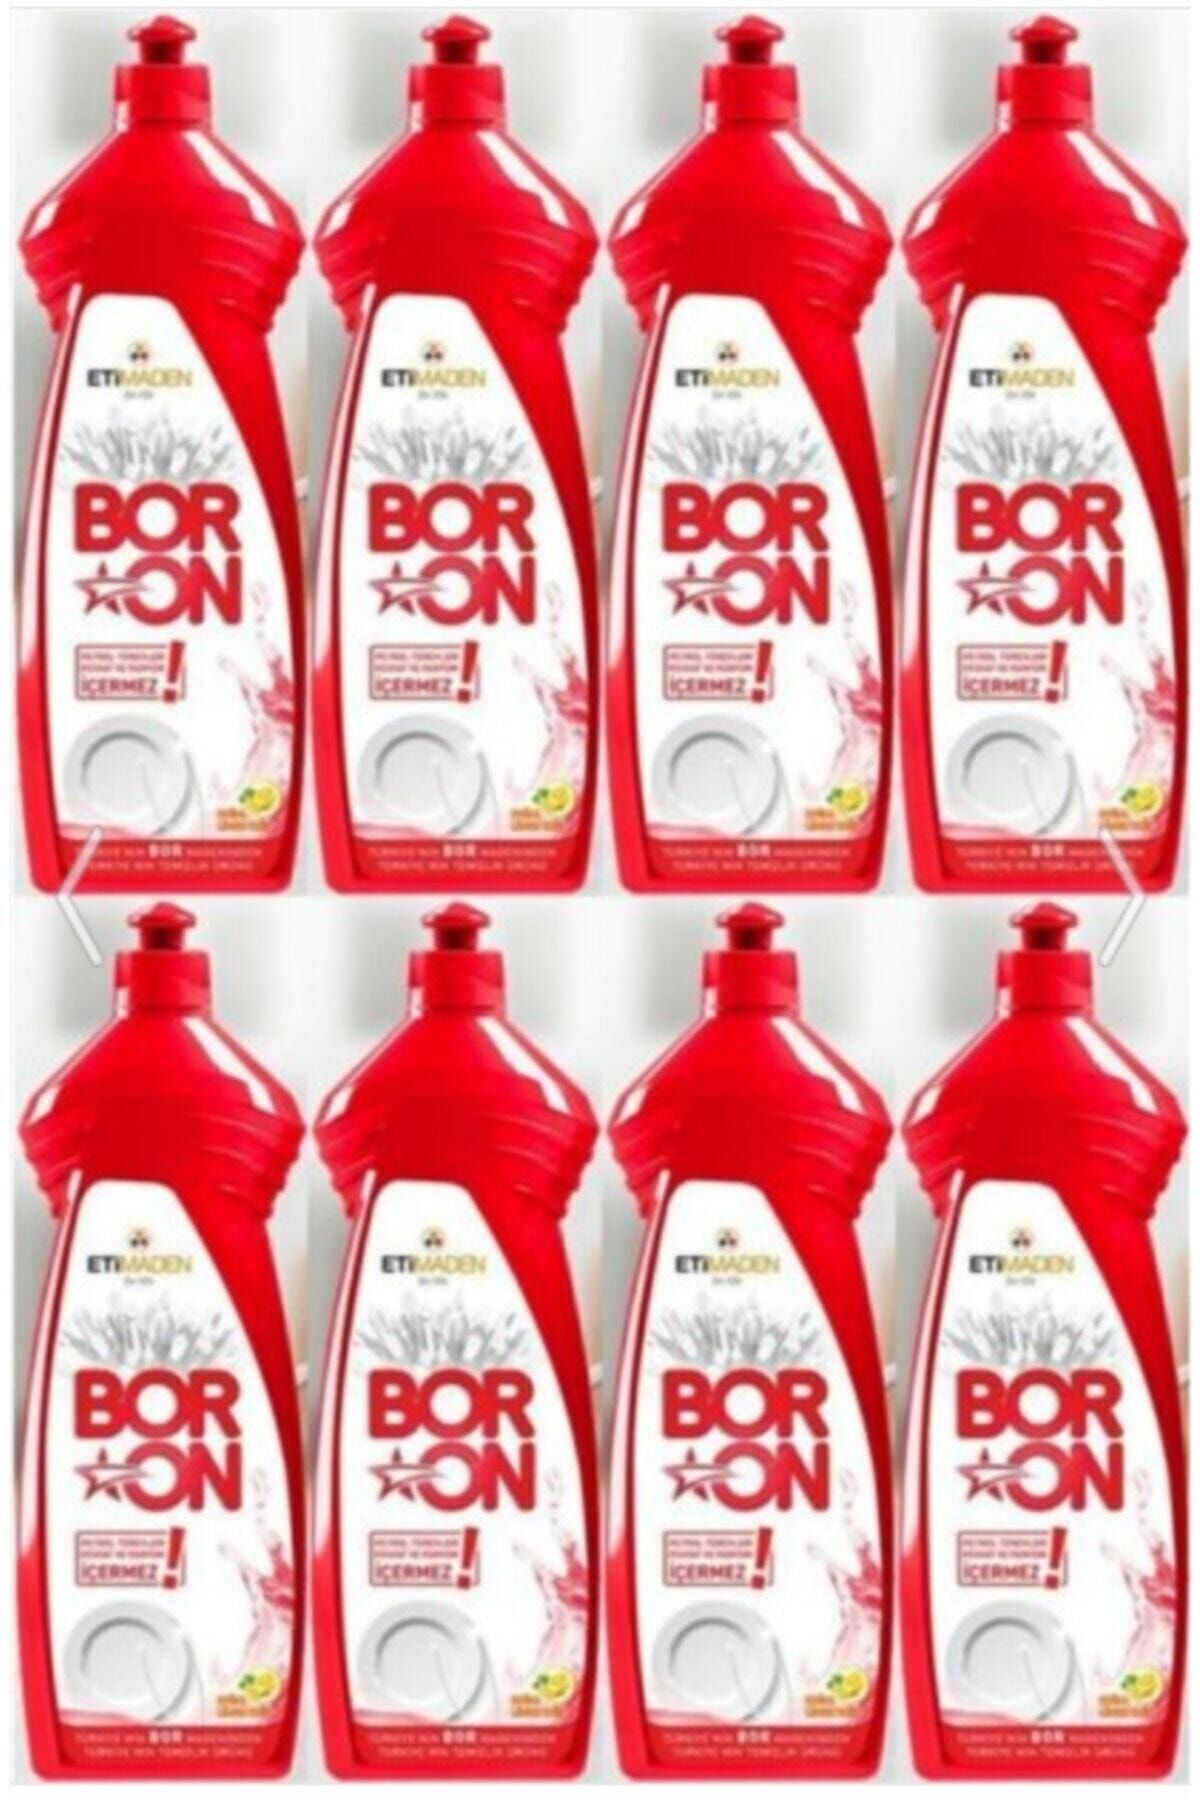 Boron Boron Elde Yıkama Bulaşık Temizlik Ürünü 650 ml 8 Adet